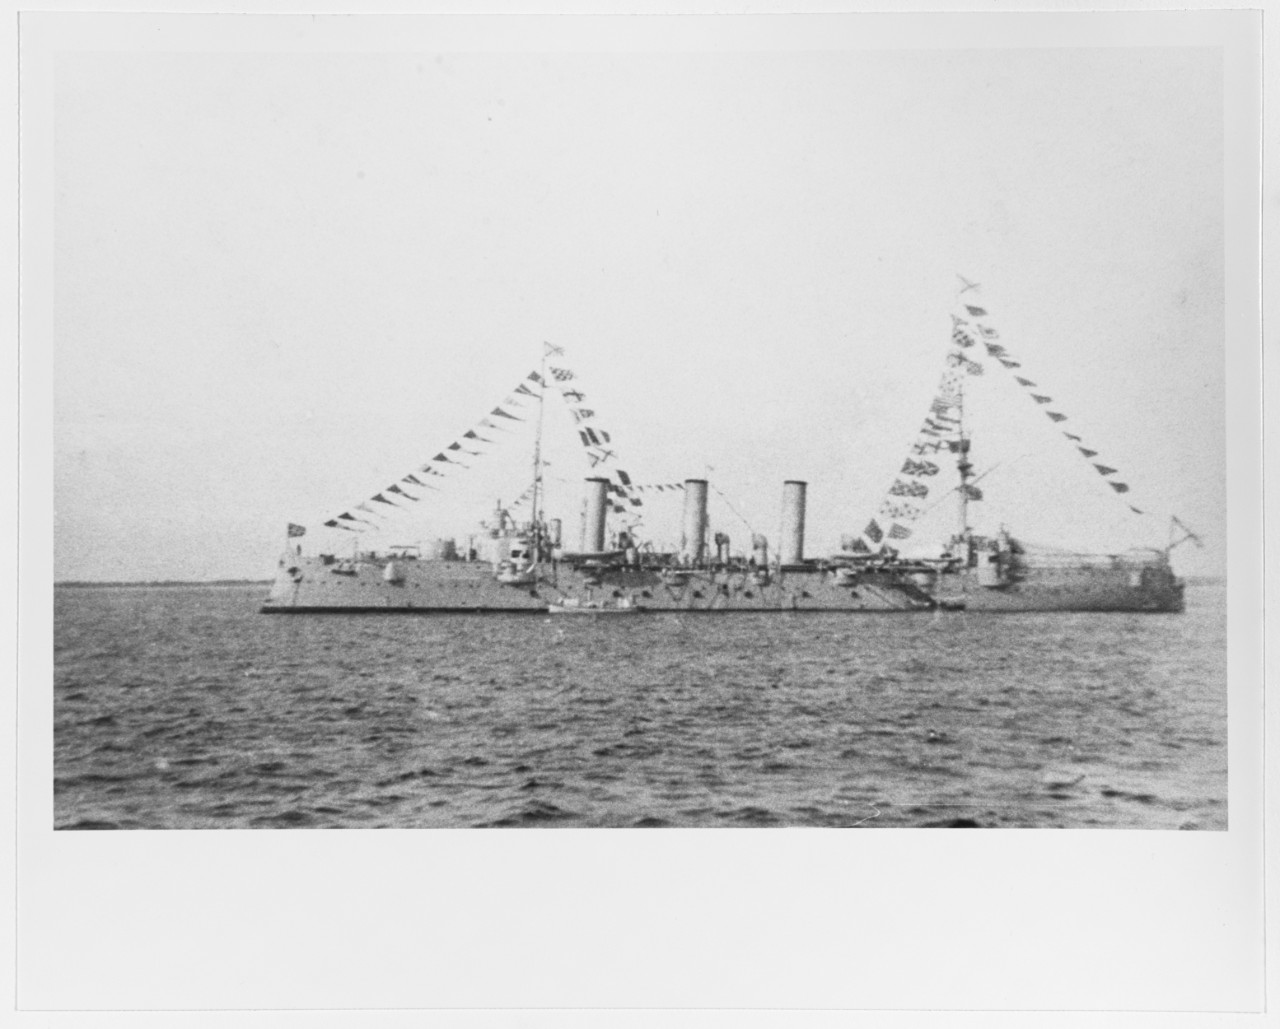 OLEG (Russian Protected Cruiser, 1903-19)